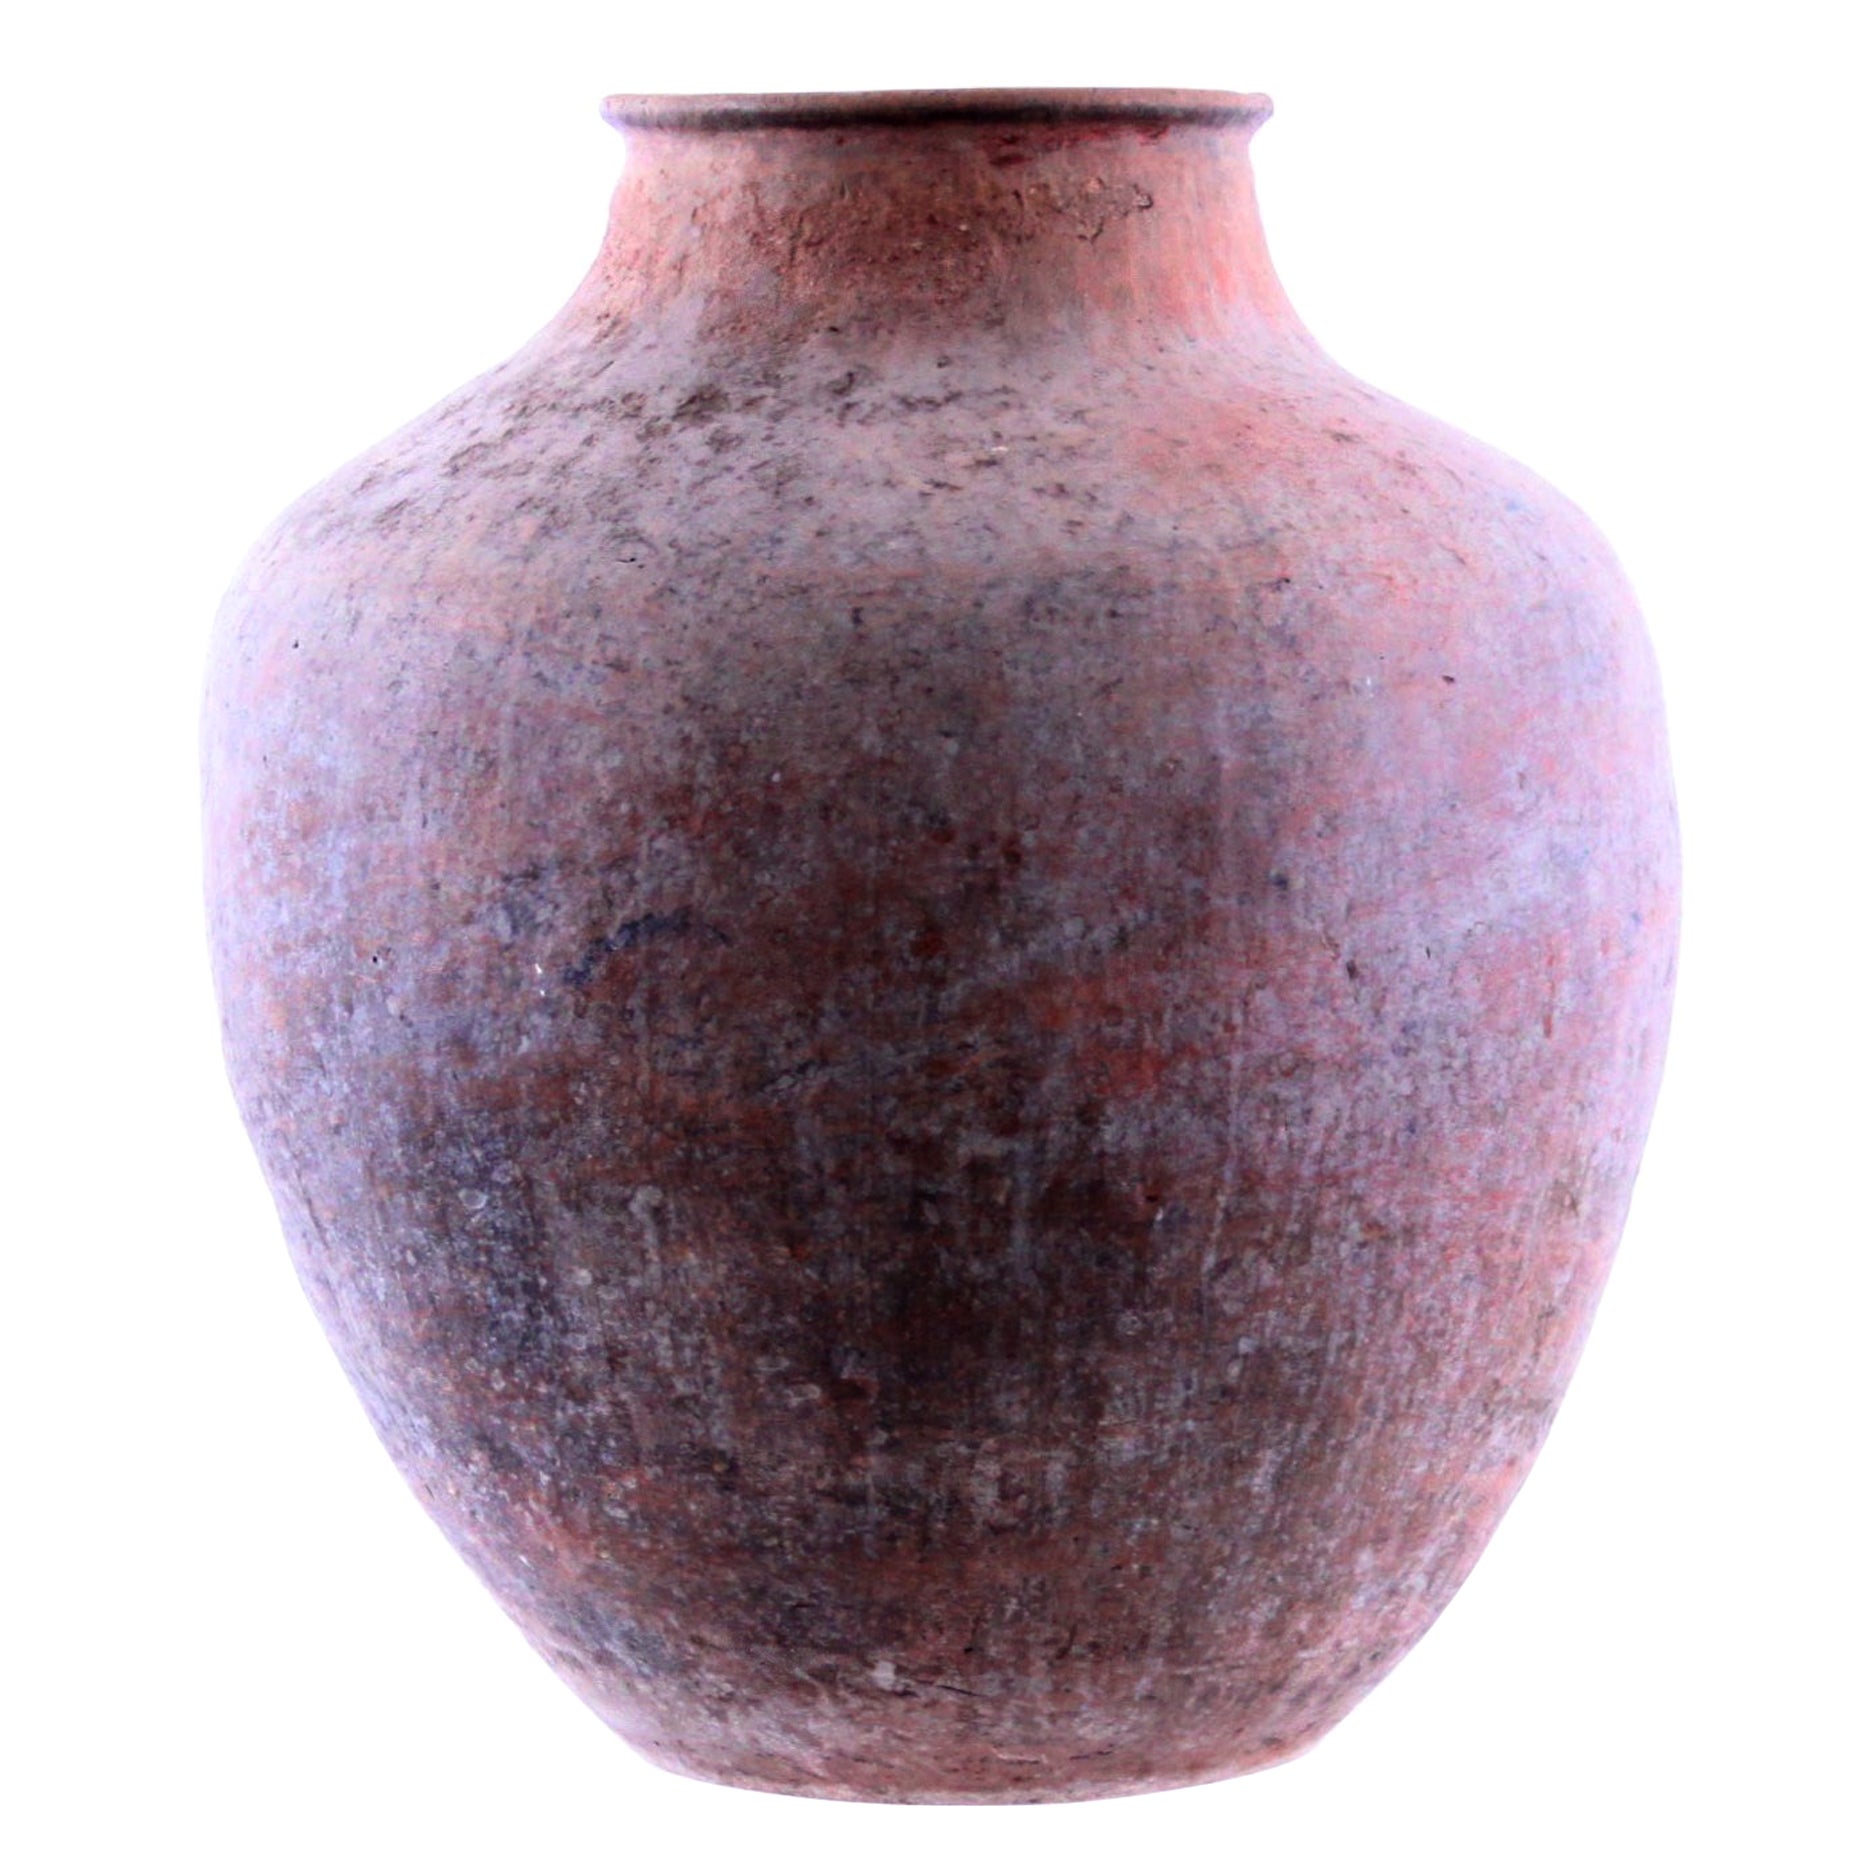 19th Century Antique Terracotta Pot